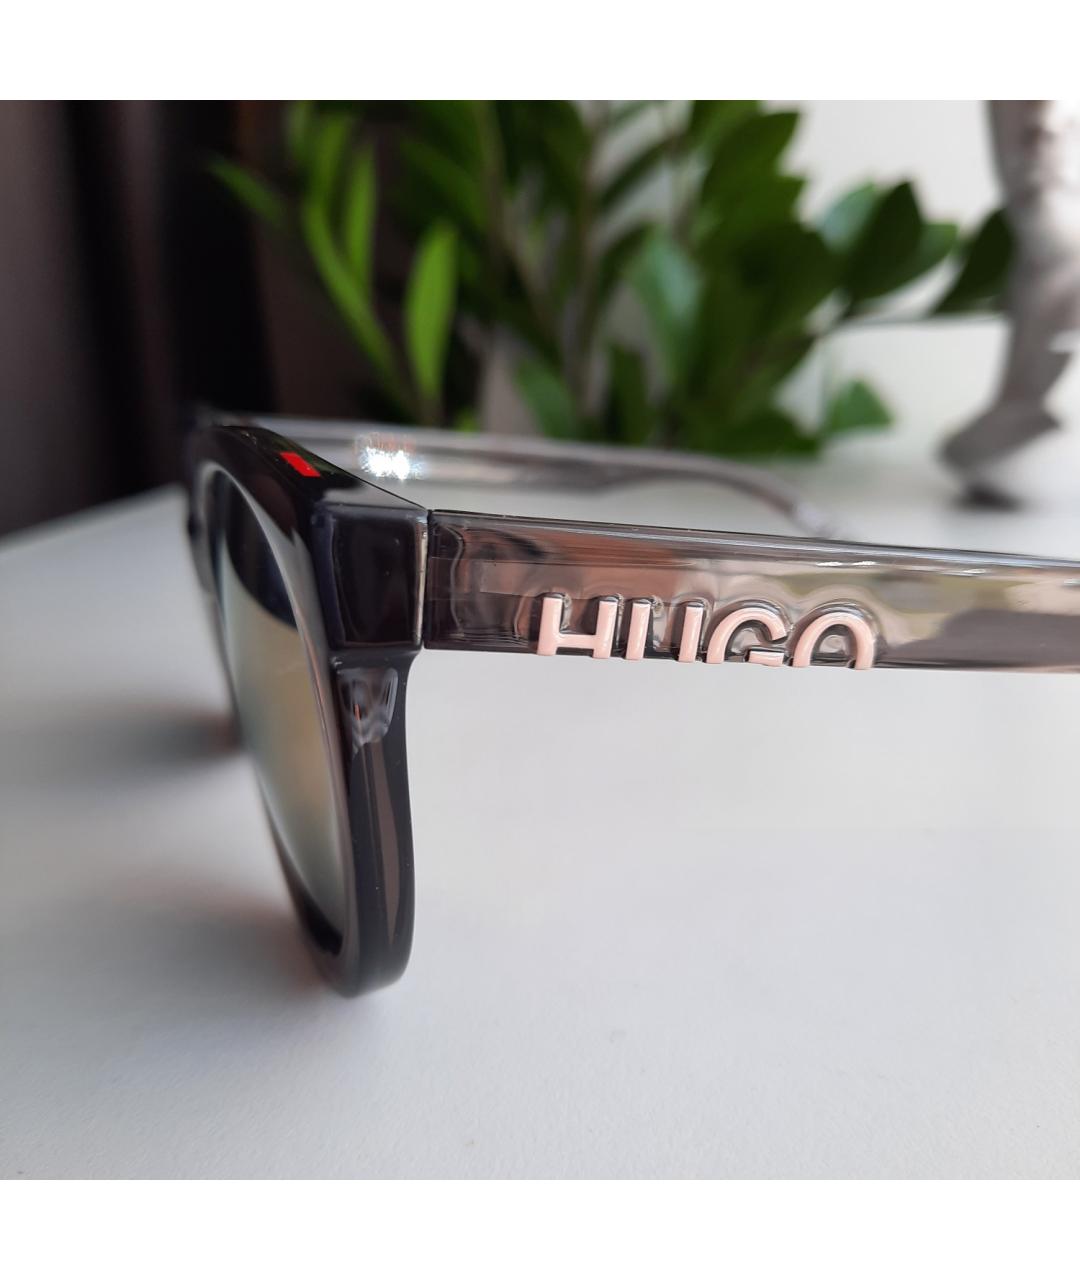 HUGO BOSS Серые солнцезащитные очки, фото 3